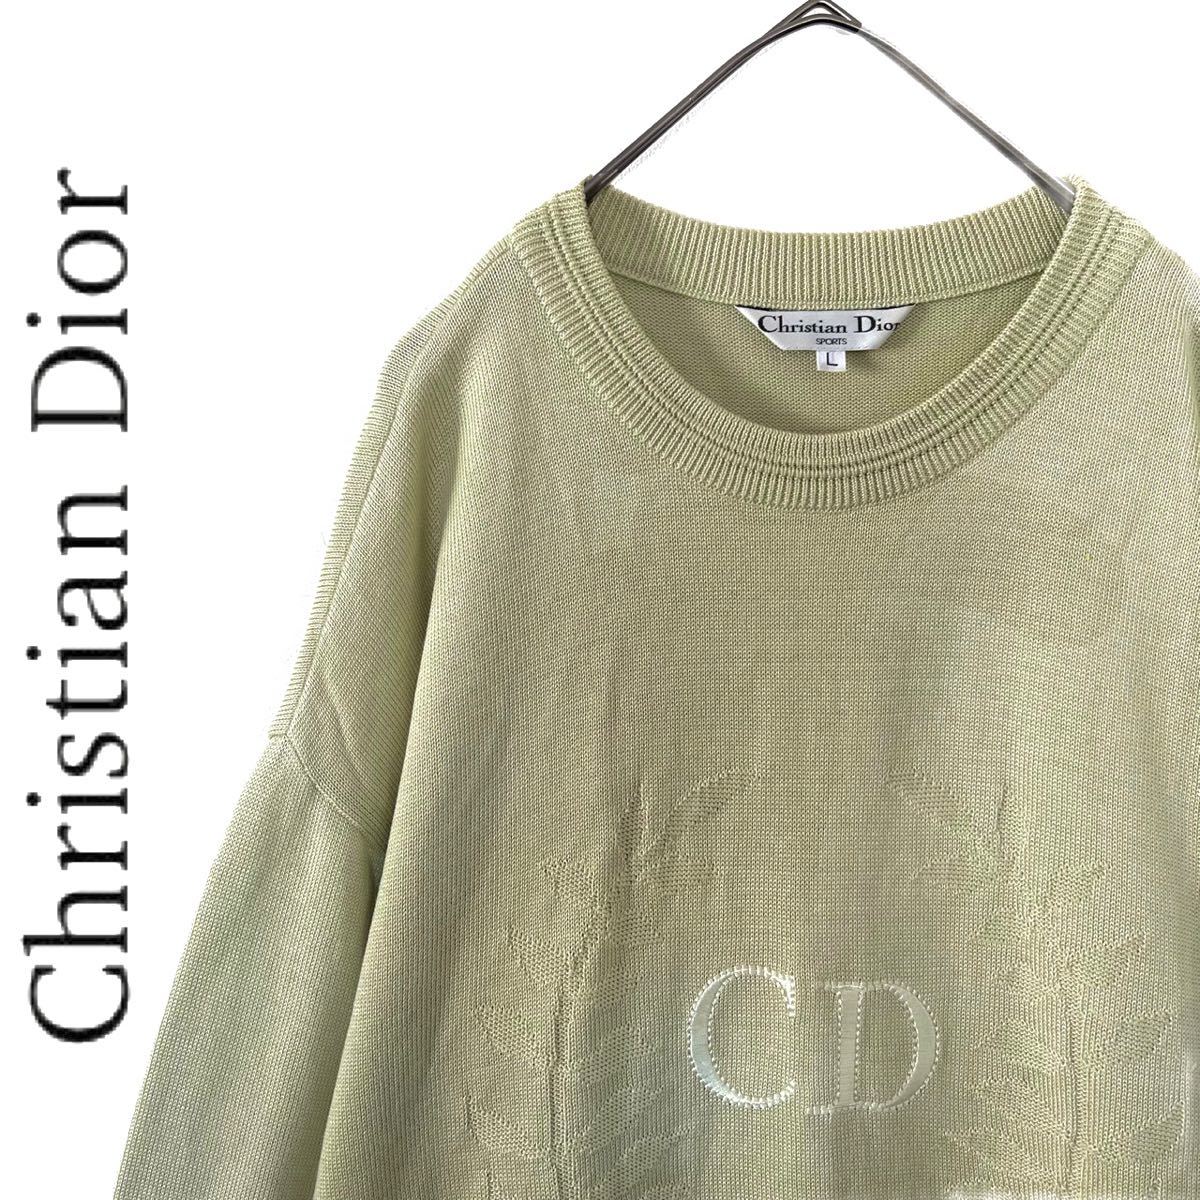 ニッサン・638 Christian Dior クリスチャンディオール 薄緑 セーター